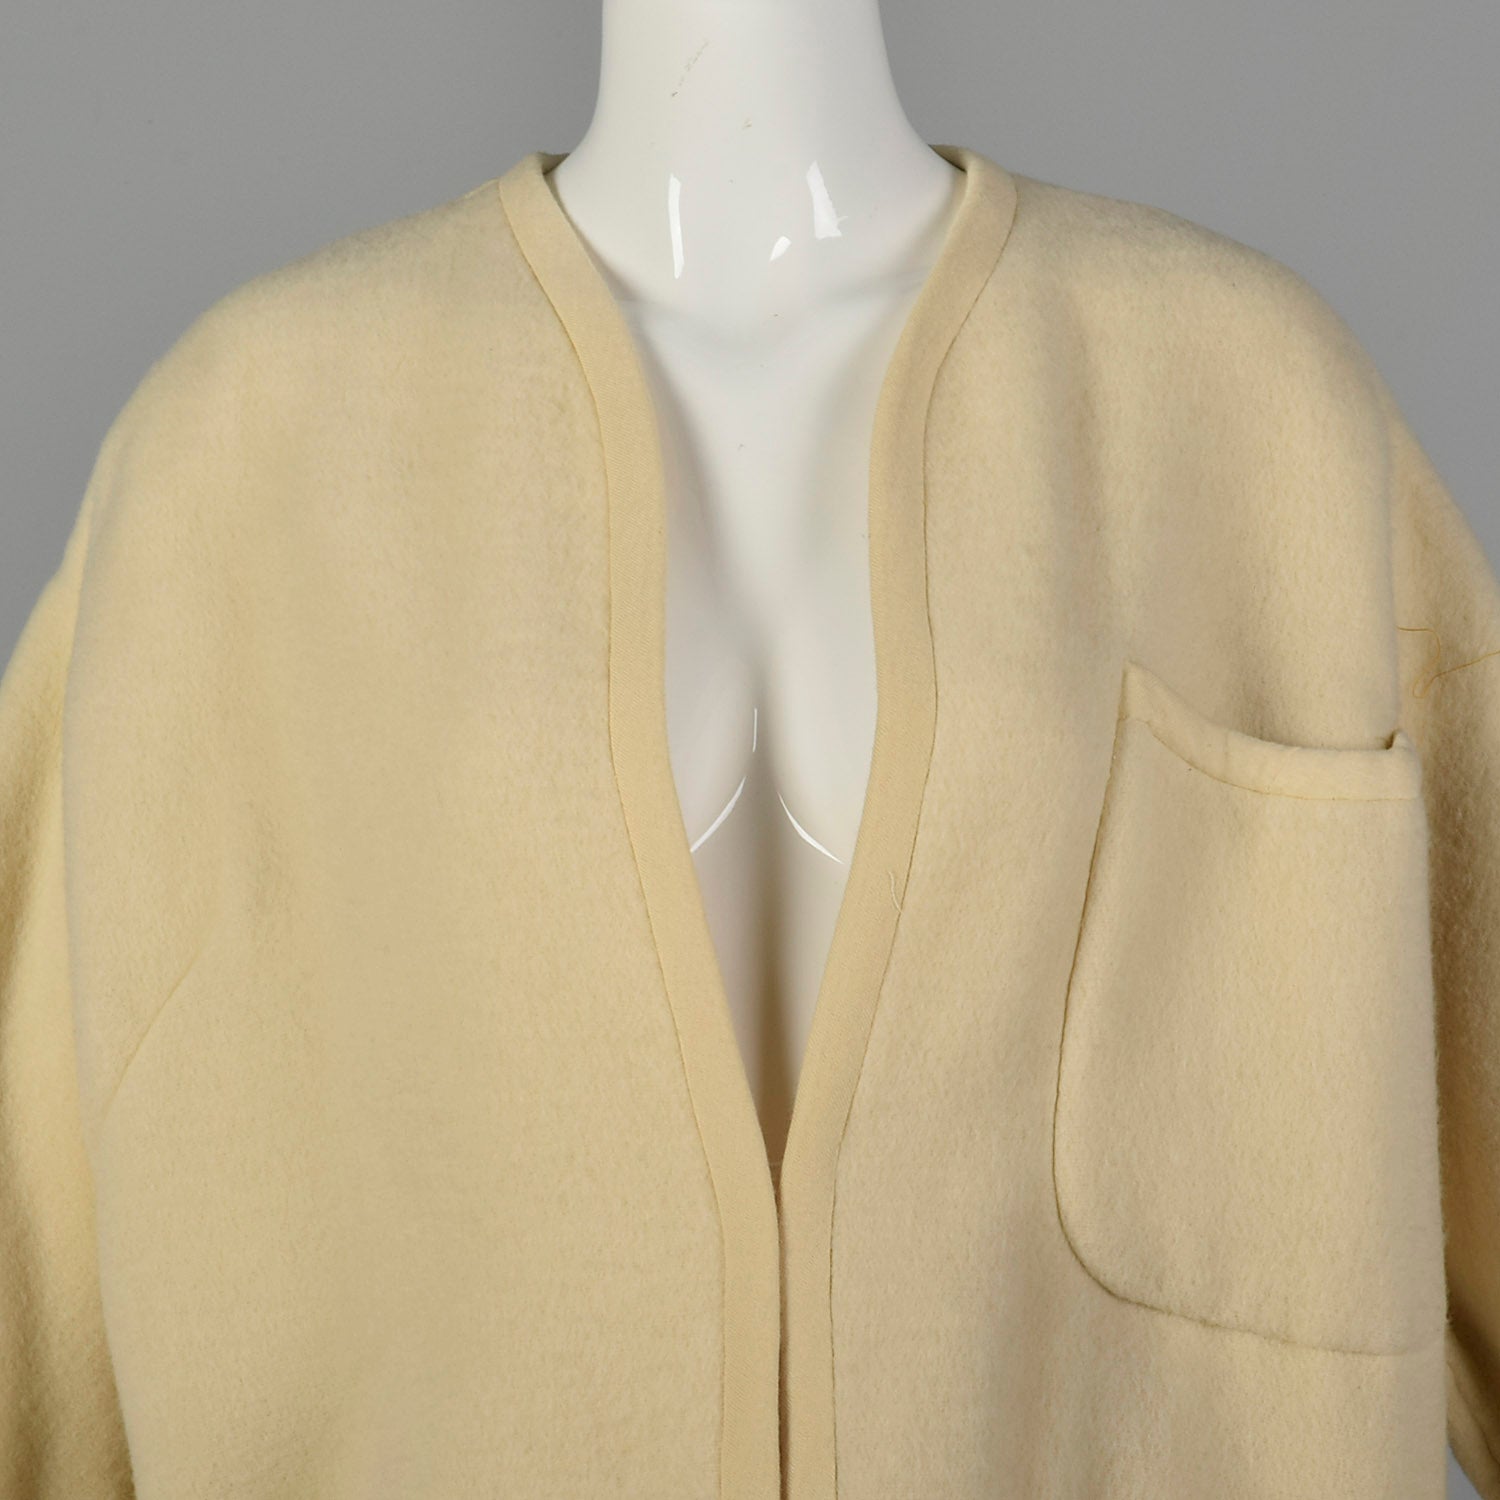 Medium-XL 1960s Cream Blanket Coat